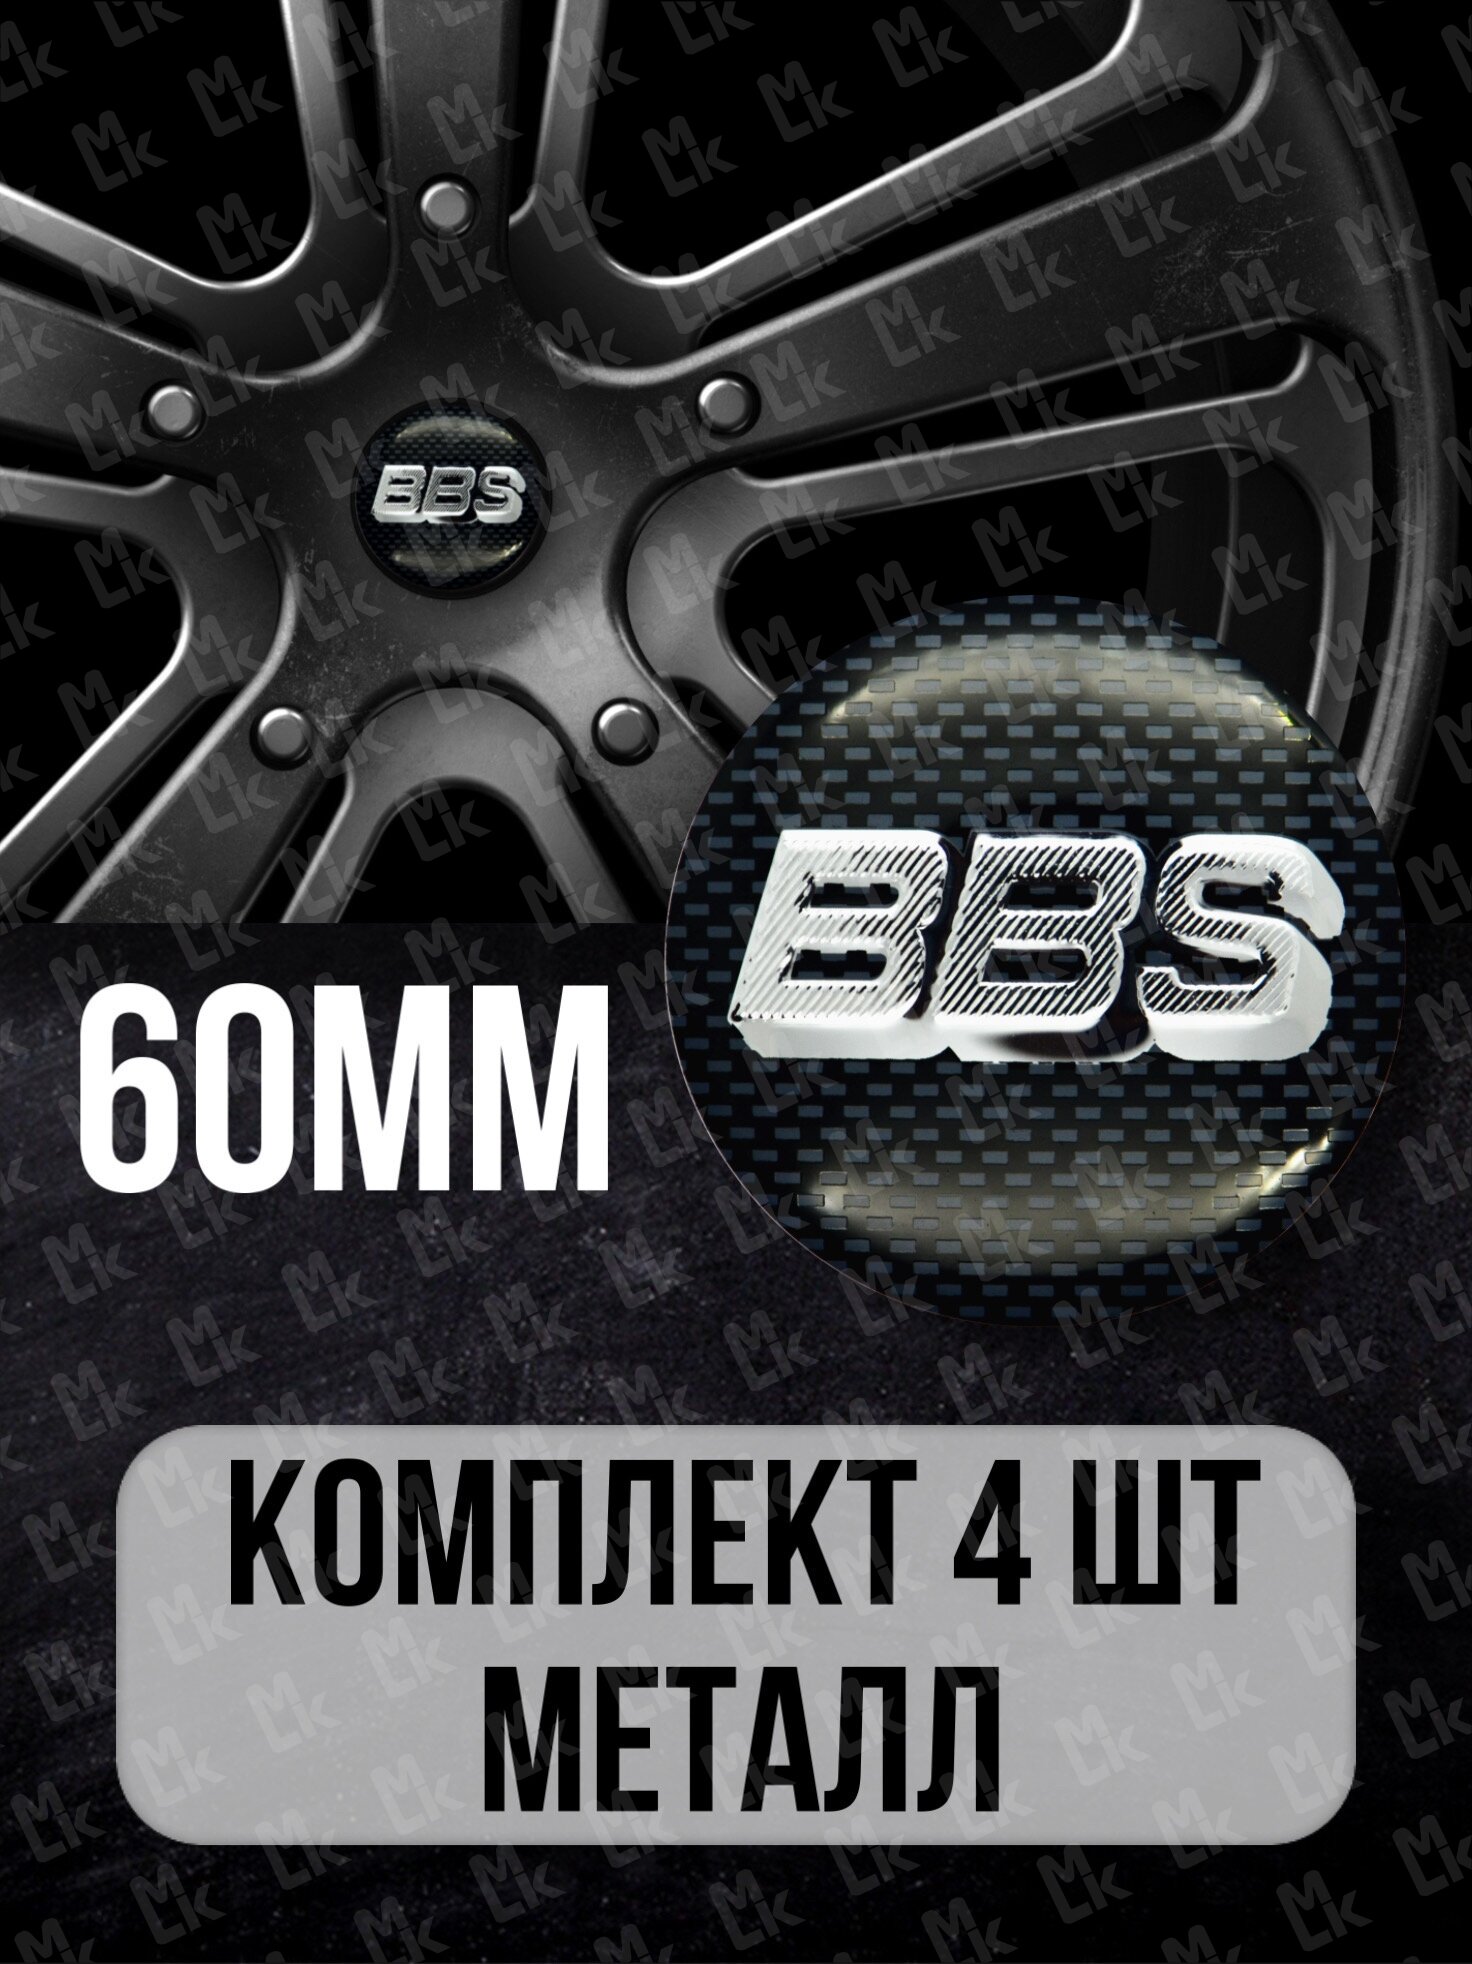 Наклейки на колесные диски алюминиевые 4шт наклейка на колесо автомобиля колпак для дисков стикиры с эмблемой BBS 60 mm